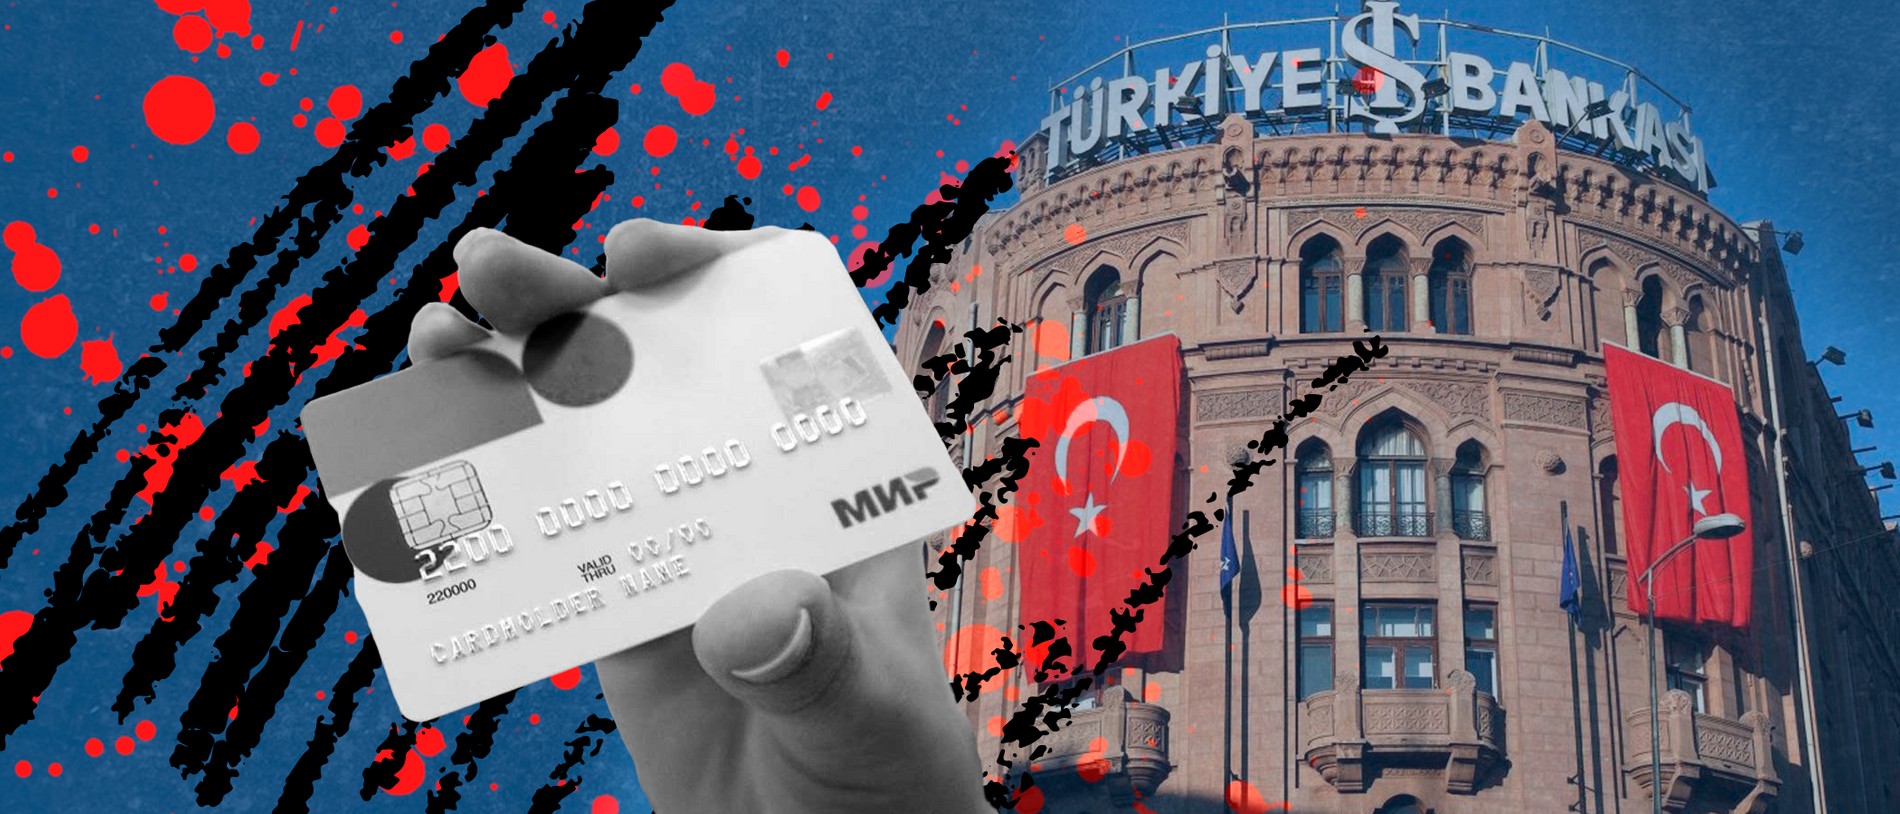 турецкая банковская карта стим фото 111